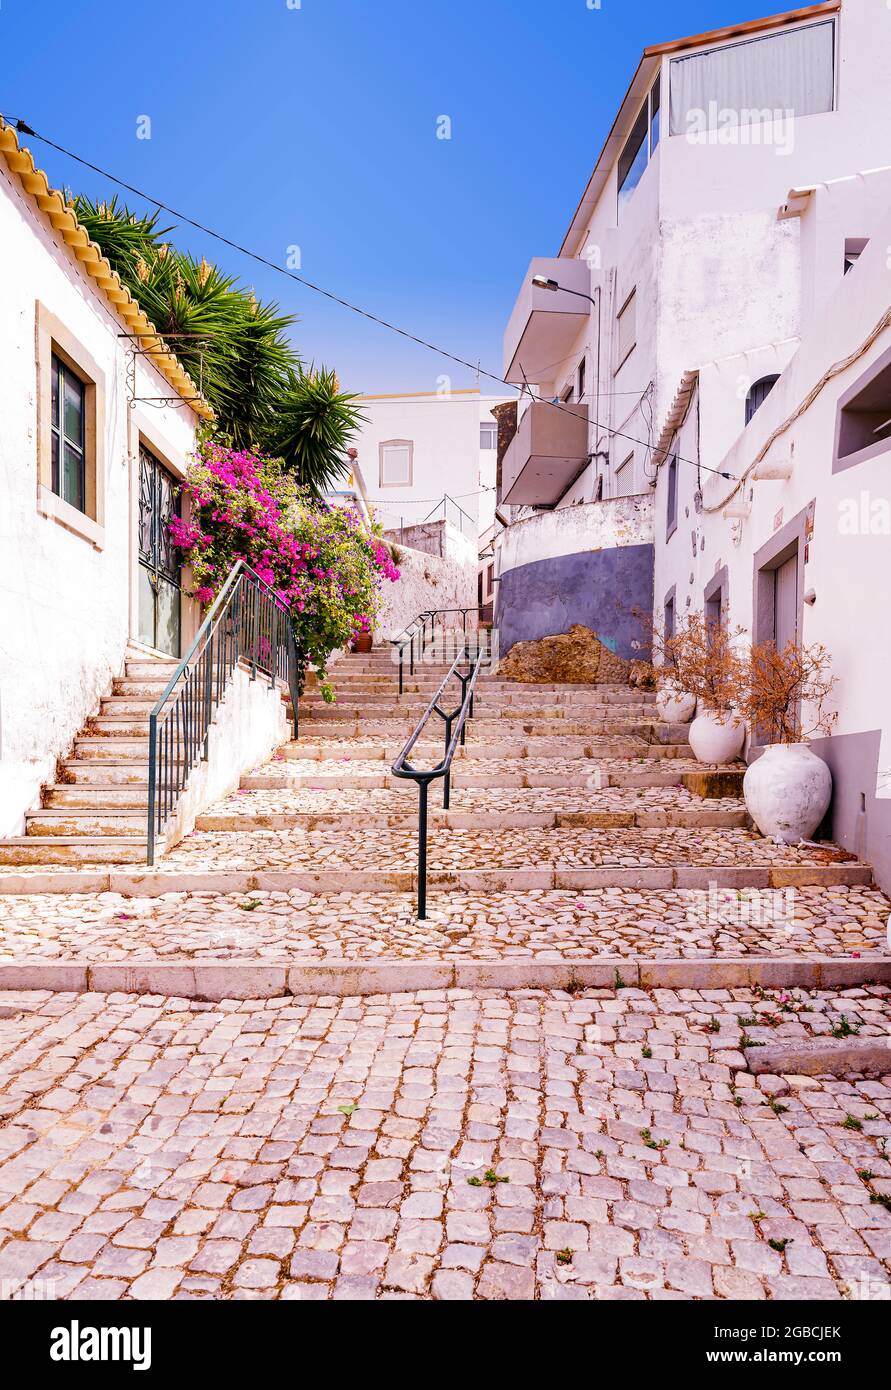 Typische Algarve steile Seitenstraße Weg Weg Weg gepflastert mit traditionellen portugiesischen Kopfsteinpflaster oder calcada. Estoi Algarve Portugal Stockfoto